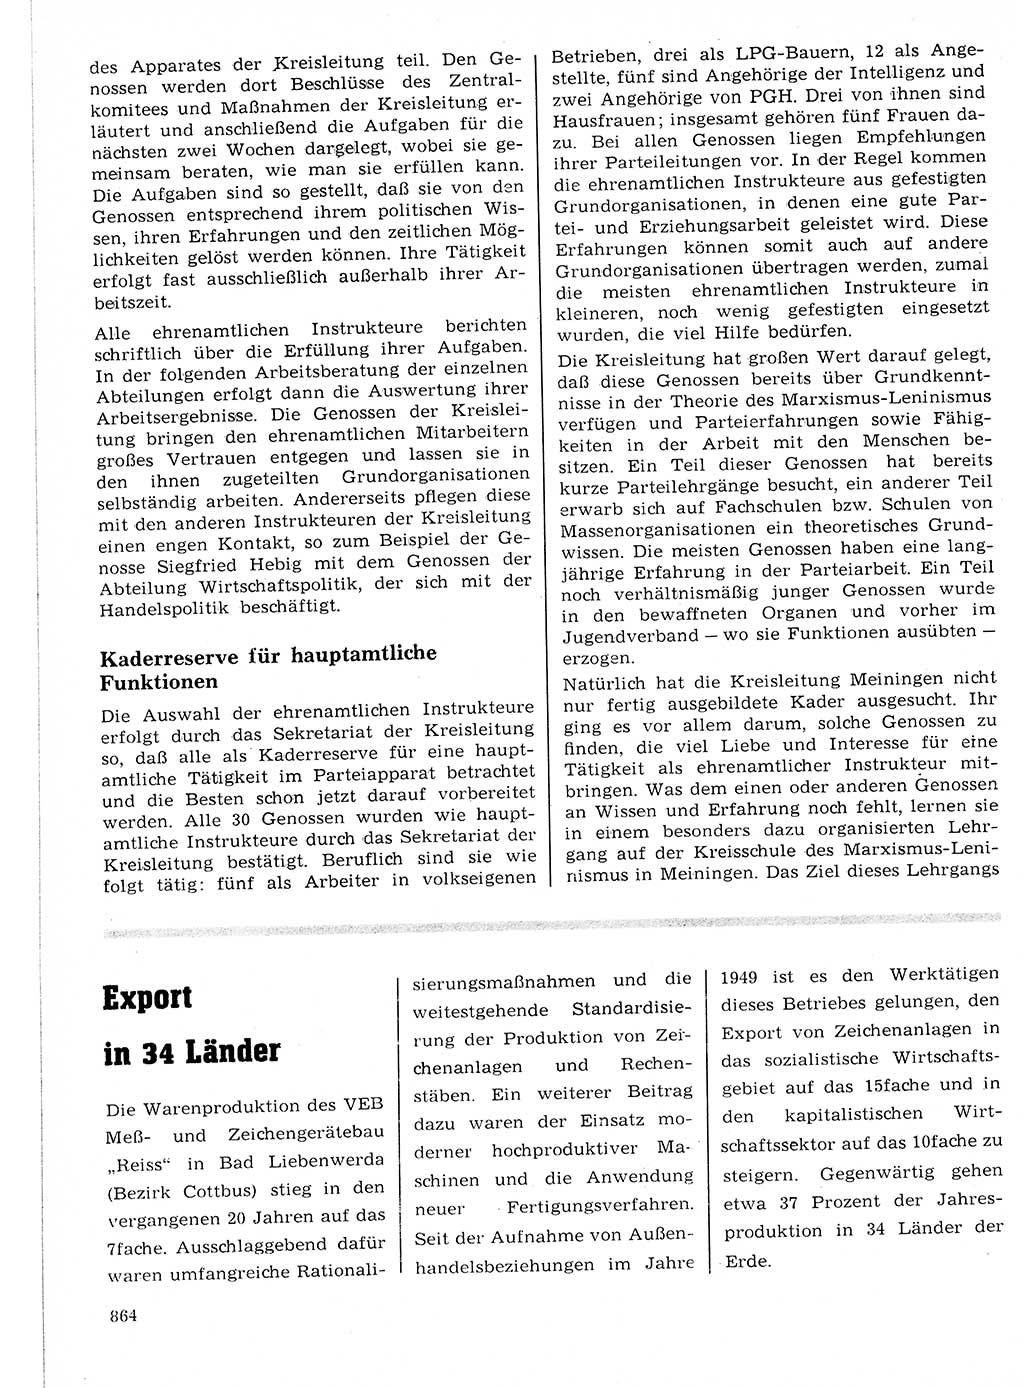 Neuer Weg (NW), Organ des Zentralkomitees (ZK) der SED (Sozialistische Einheitspartei Deutschlands) fÃ¼r Fragen des Parteilebens, 21. Jahrgang [Deutsche Demokratische Republik (DDR)] 1966, Seite 864 (NW ZK SED DDR 1966, S. 864)